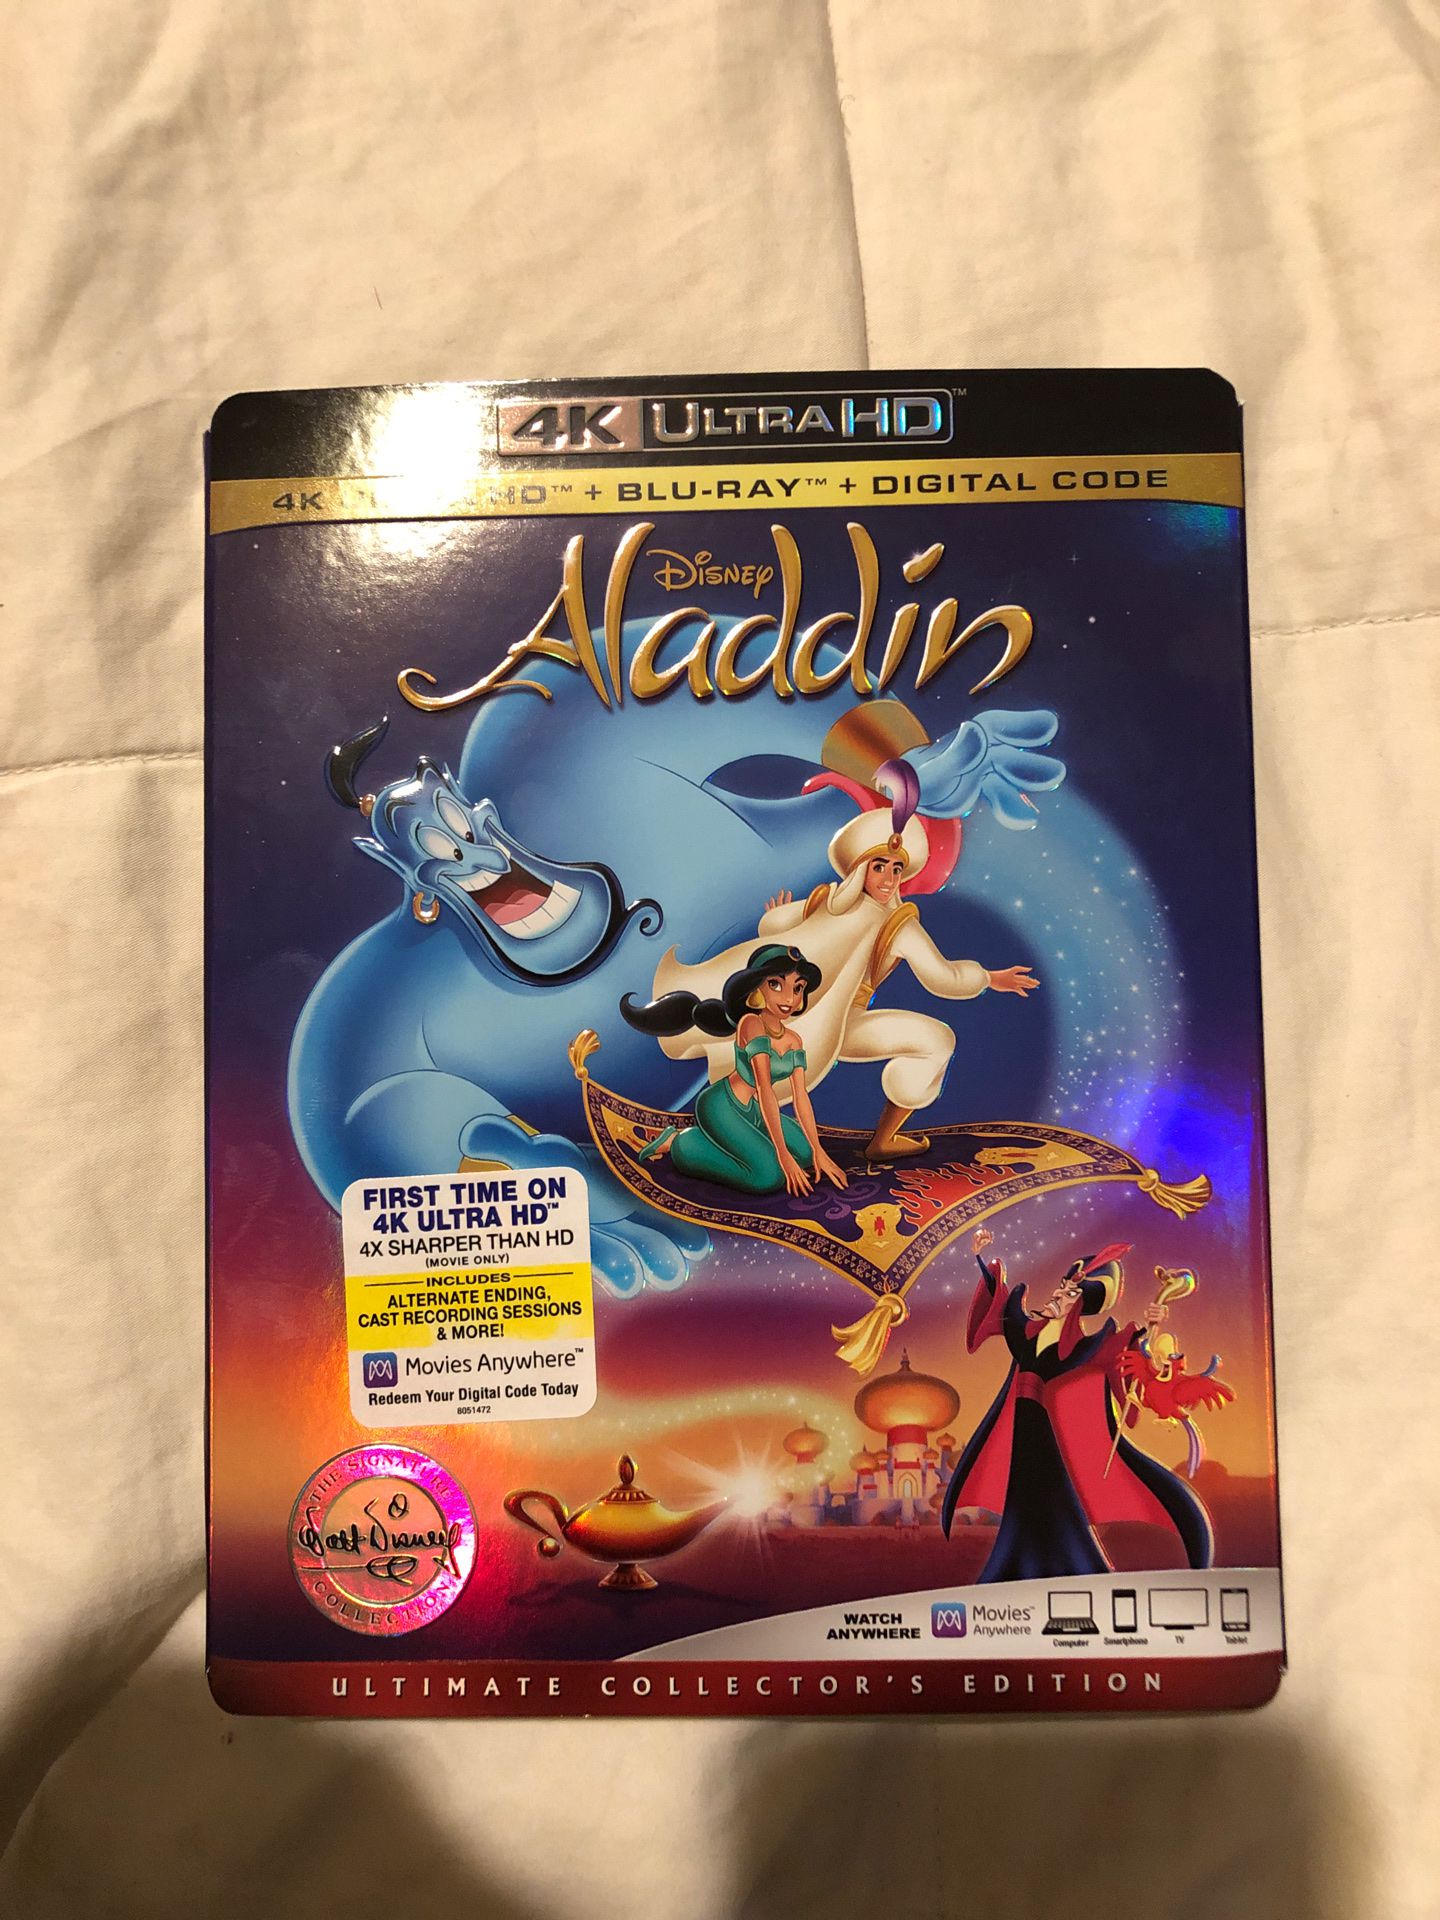 Aladdin (1992) 4k